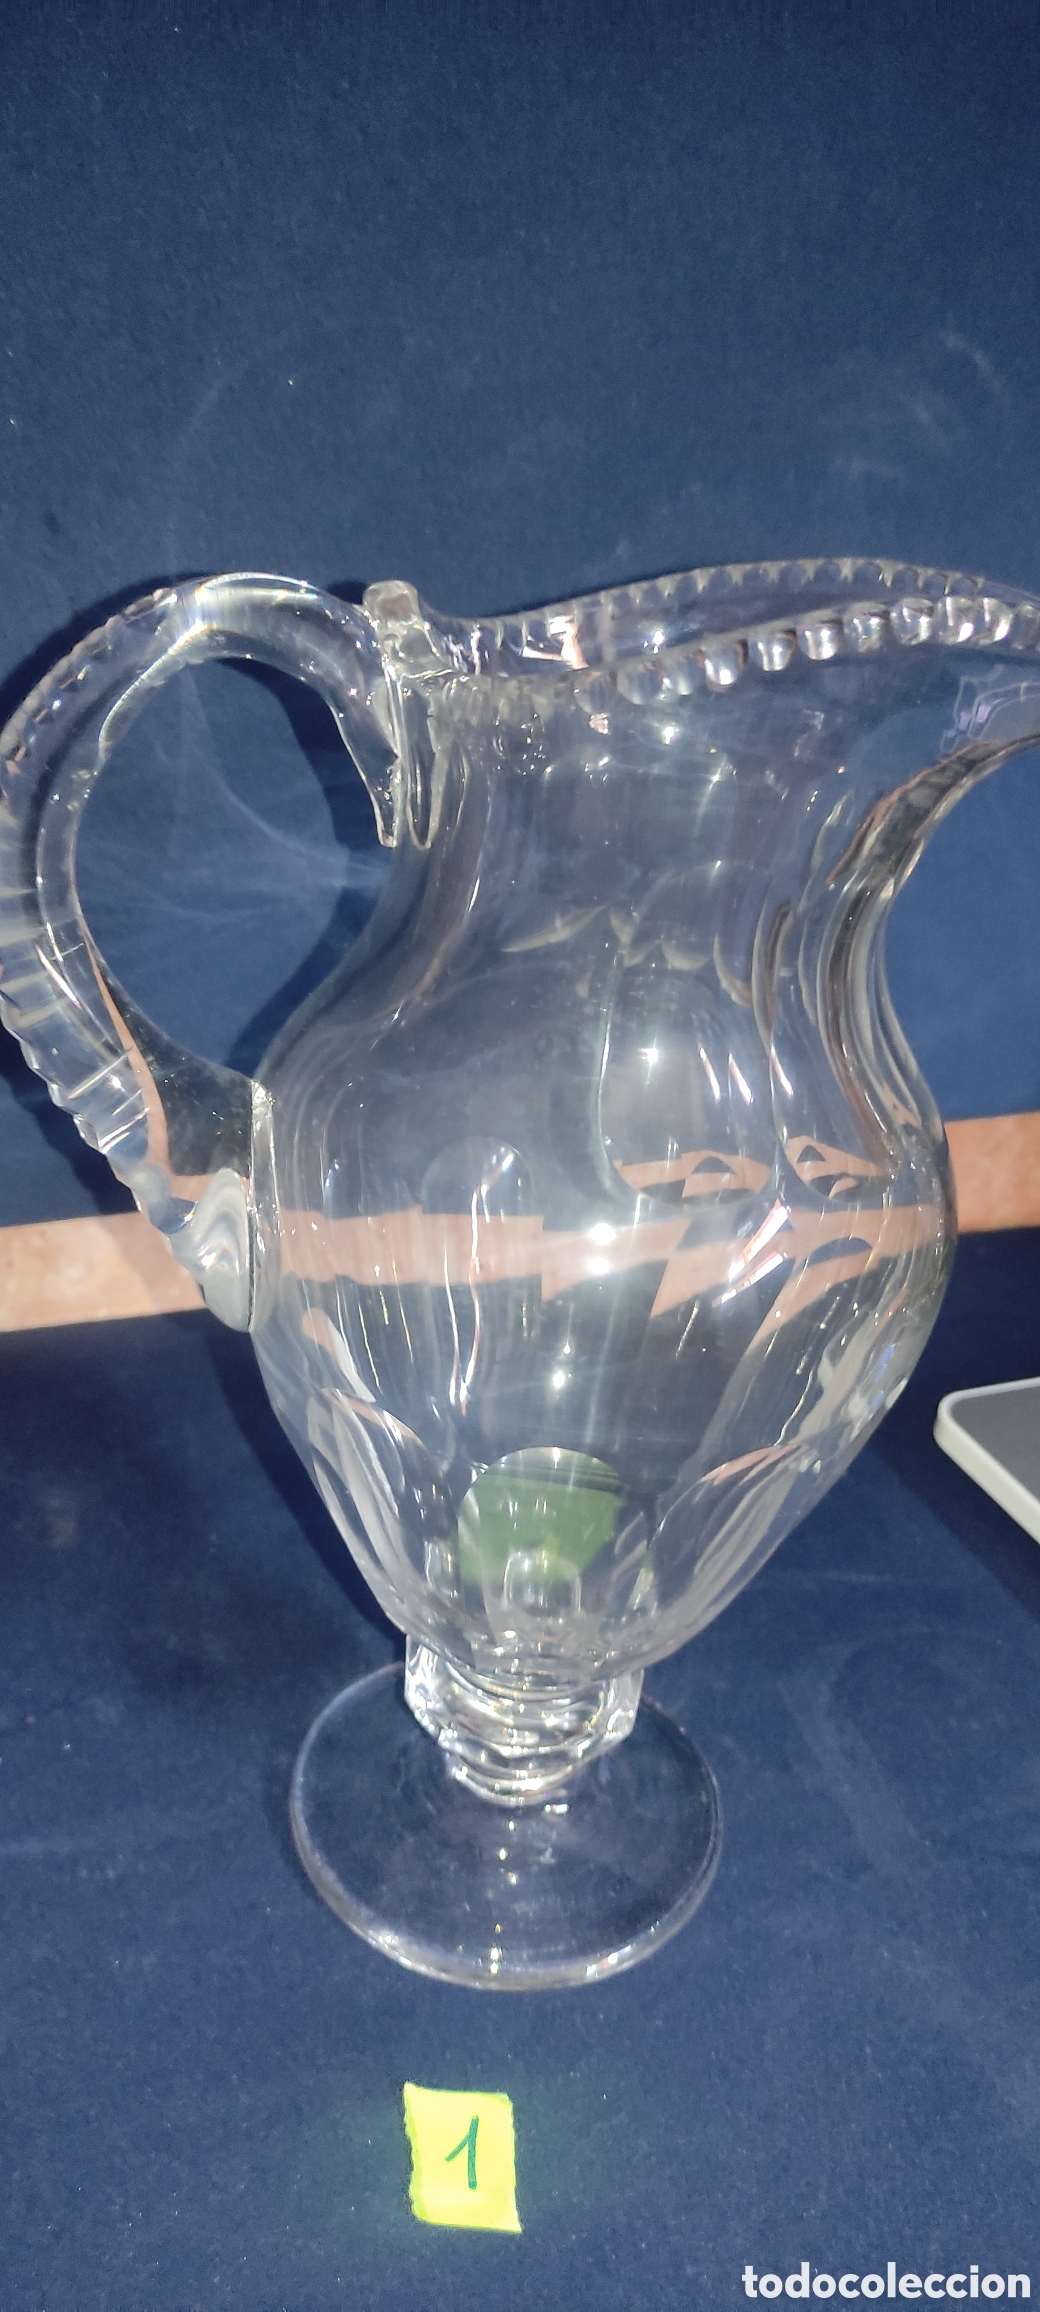 antigua jarra de agua cristal tallado años 40 s - Buy Crystal and